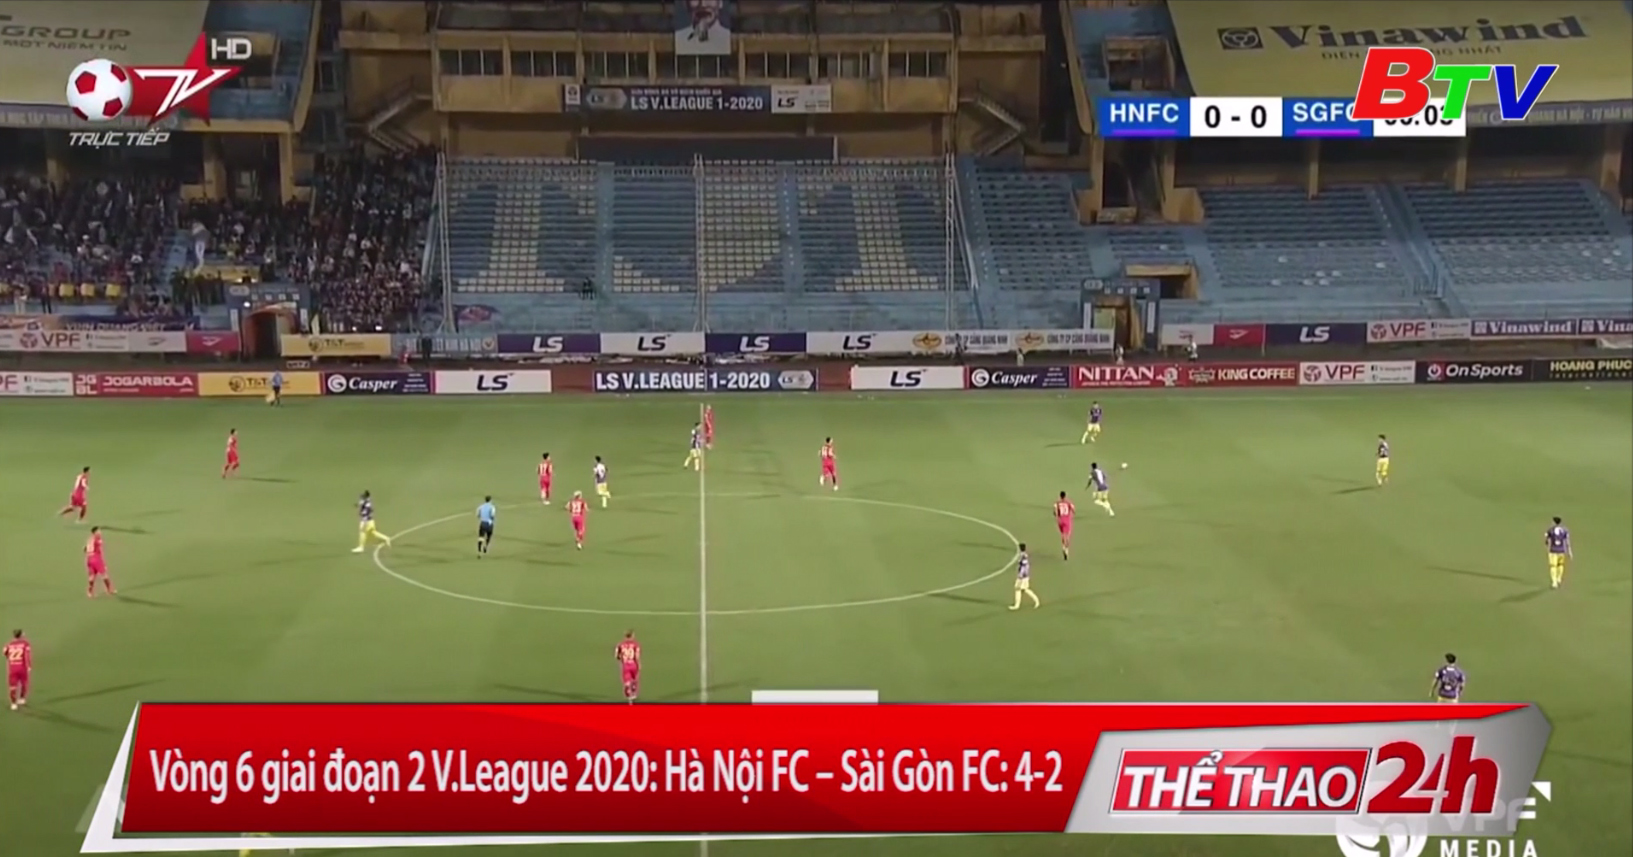 Vòng 6 giai đoạn 2 V-League 2020 – Hà Nội FC 4-2 Sài Gòn FC